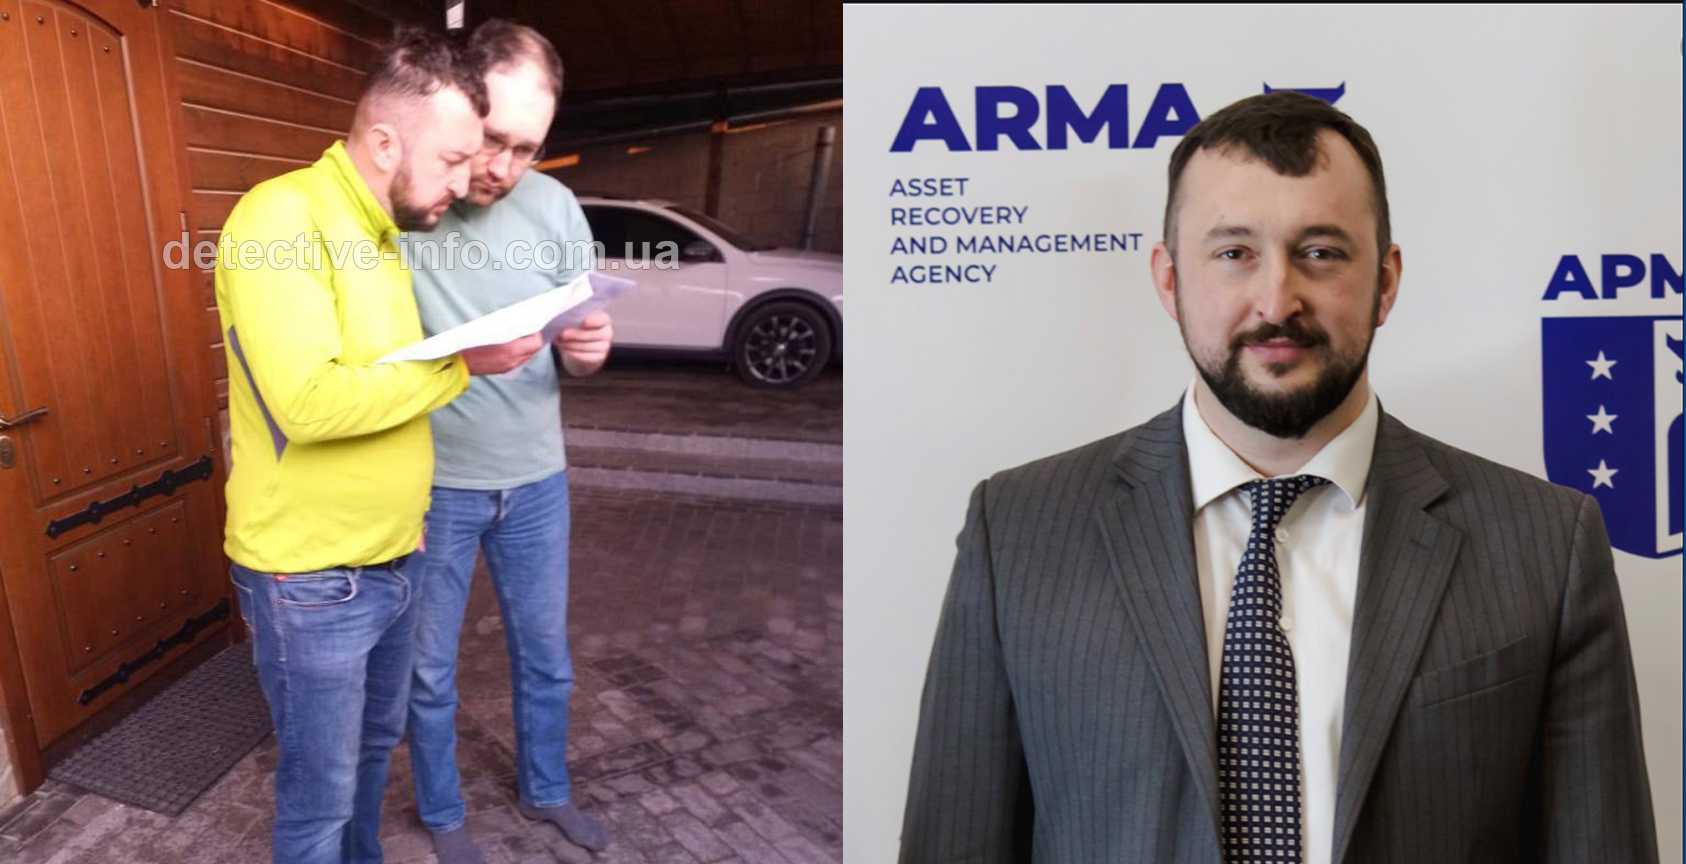 ГБР, СБУ и ОГПУ пришли в АРМА за пропавшим воровским «общаком» (+видео)